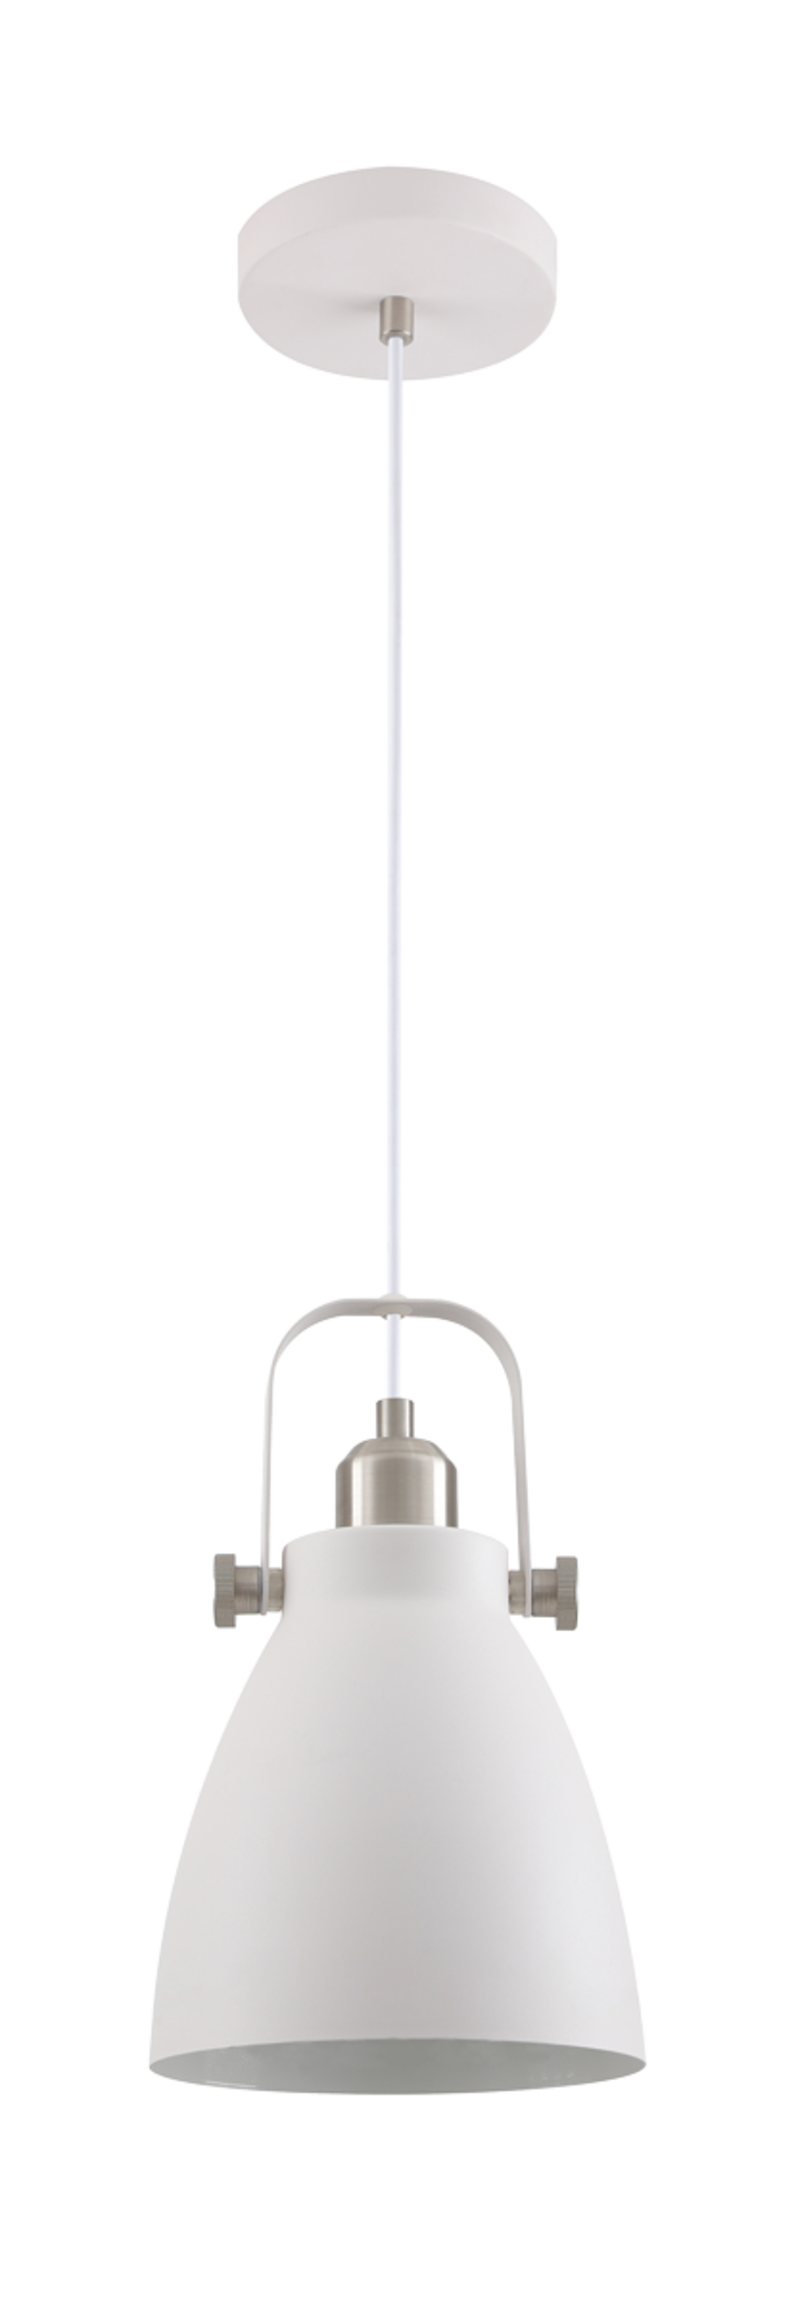 Светильник потолочный ARTSTYLE HT-743W (подвес, диаметр 17см) металлический, E27